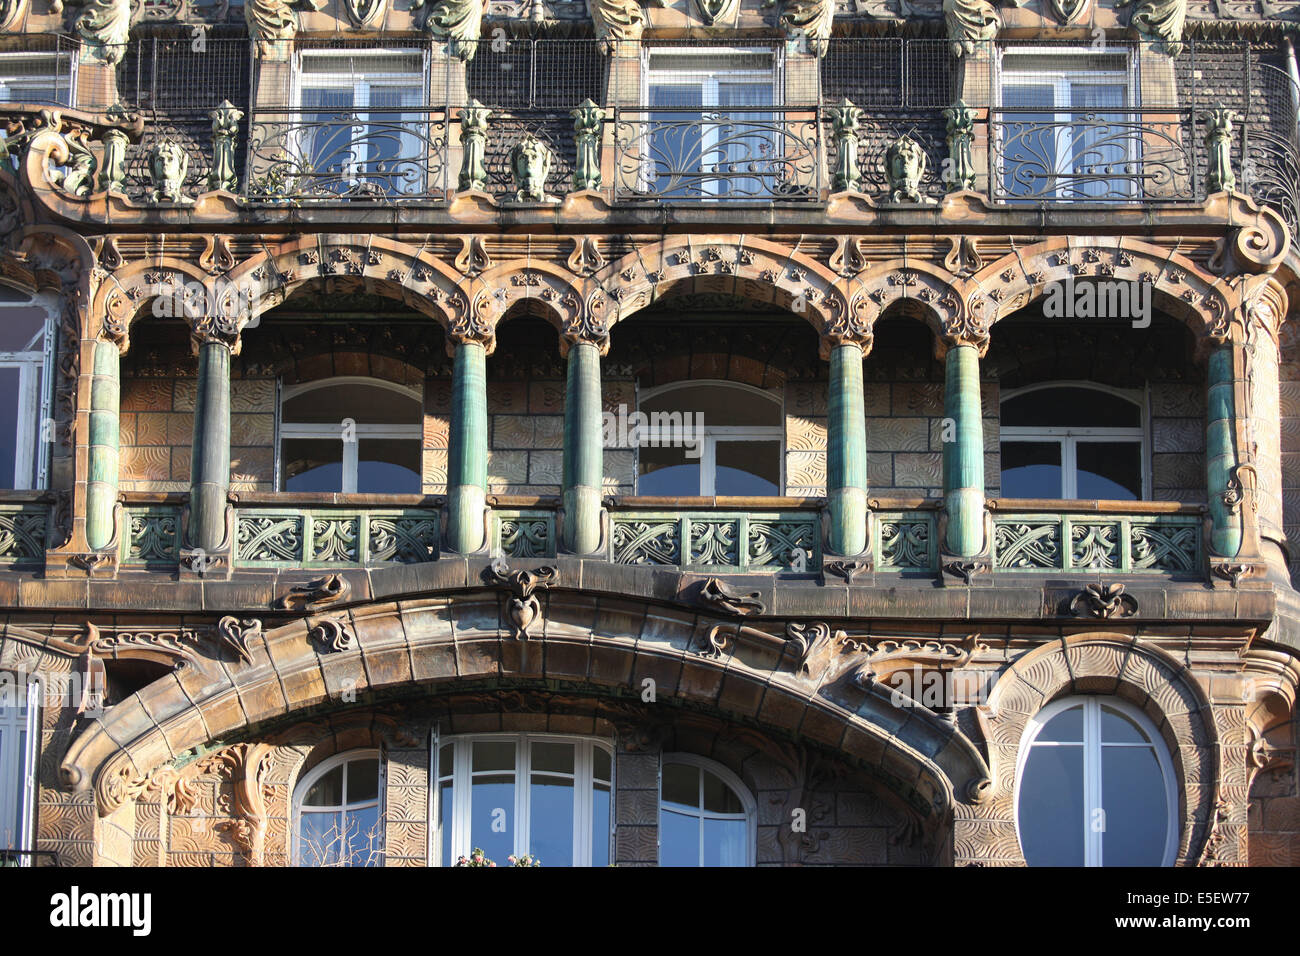 France, paris 7e, 29 avenue rapp, immeuble, architecte jules lavirotte, ceramiques d'alexandre bigot, Stock Photo